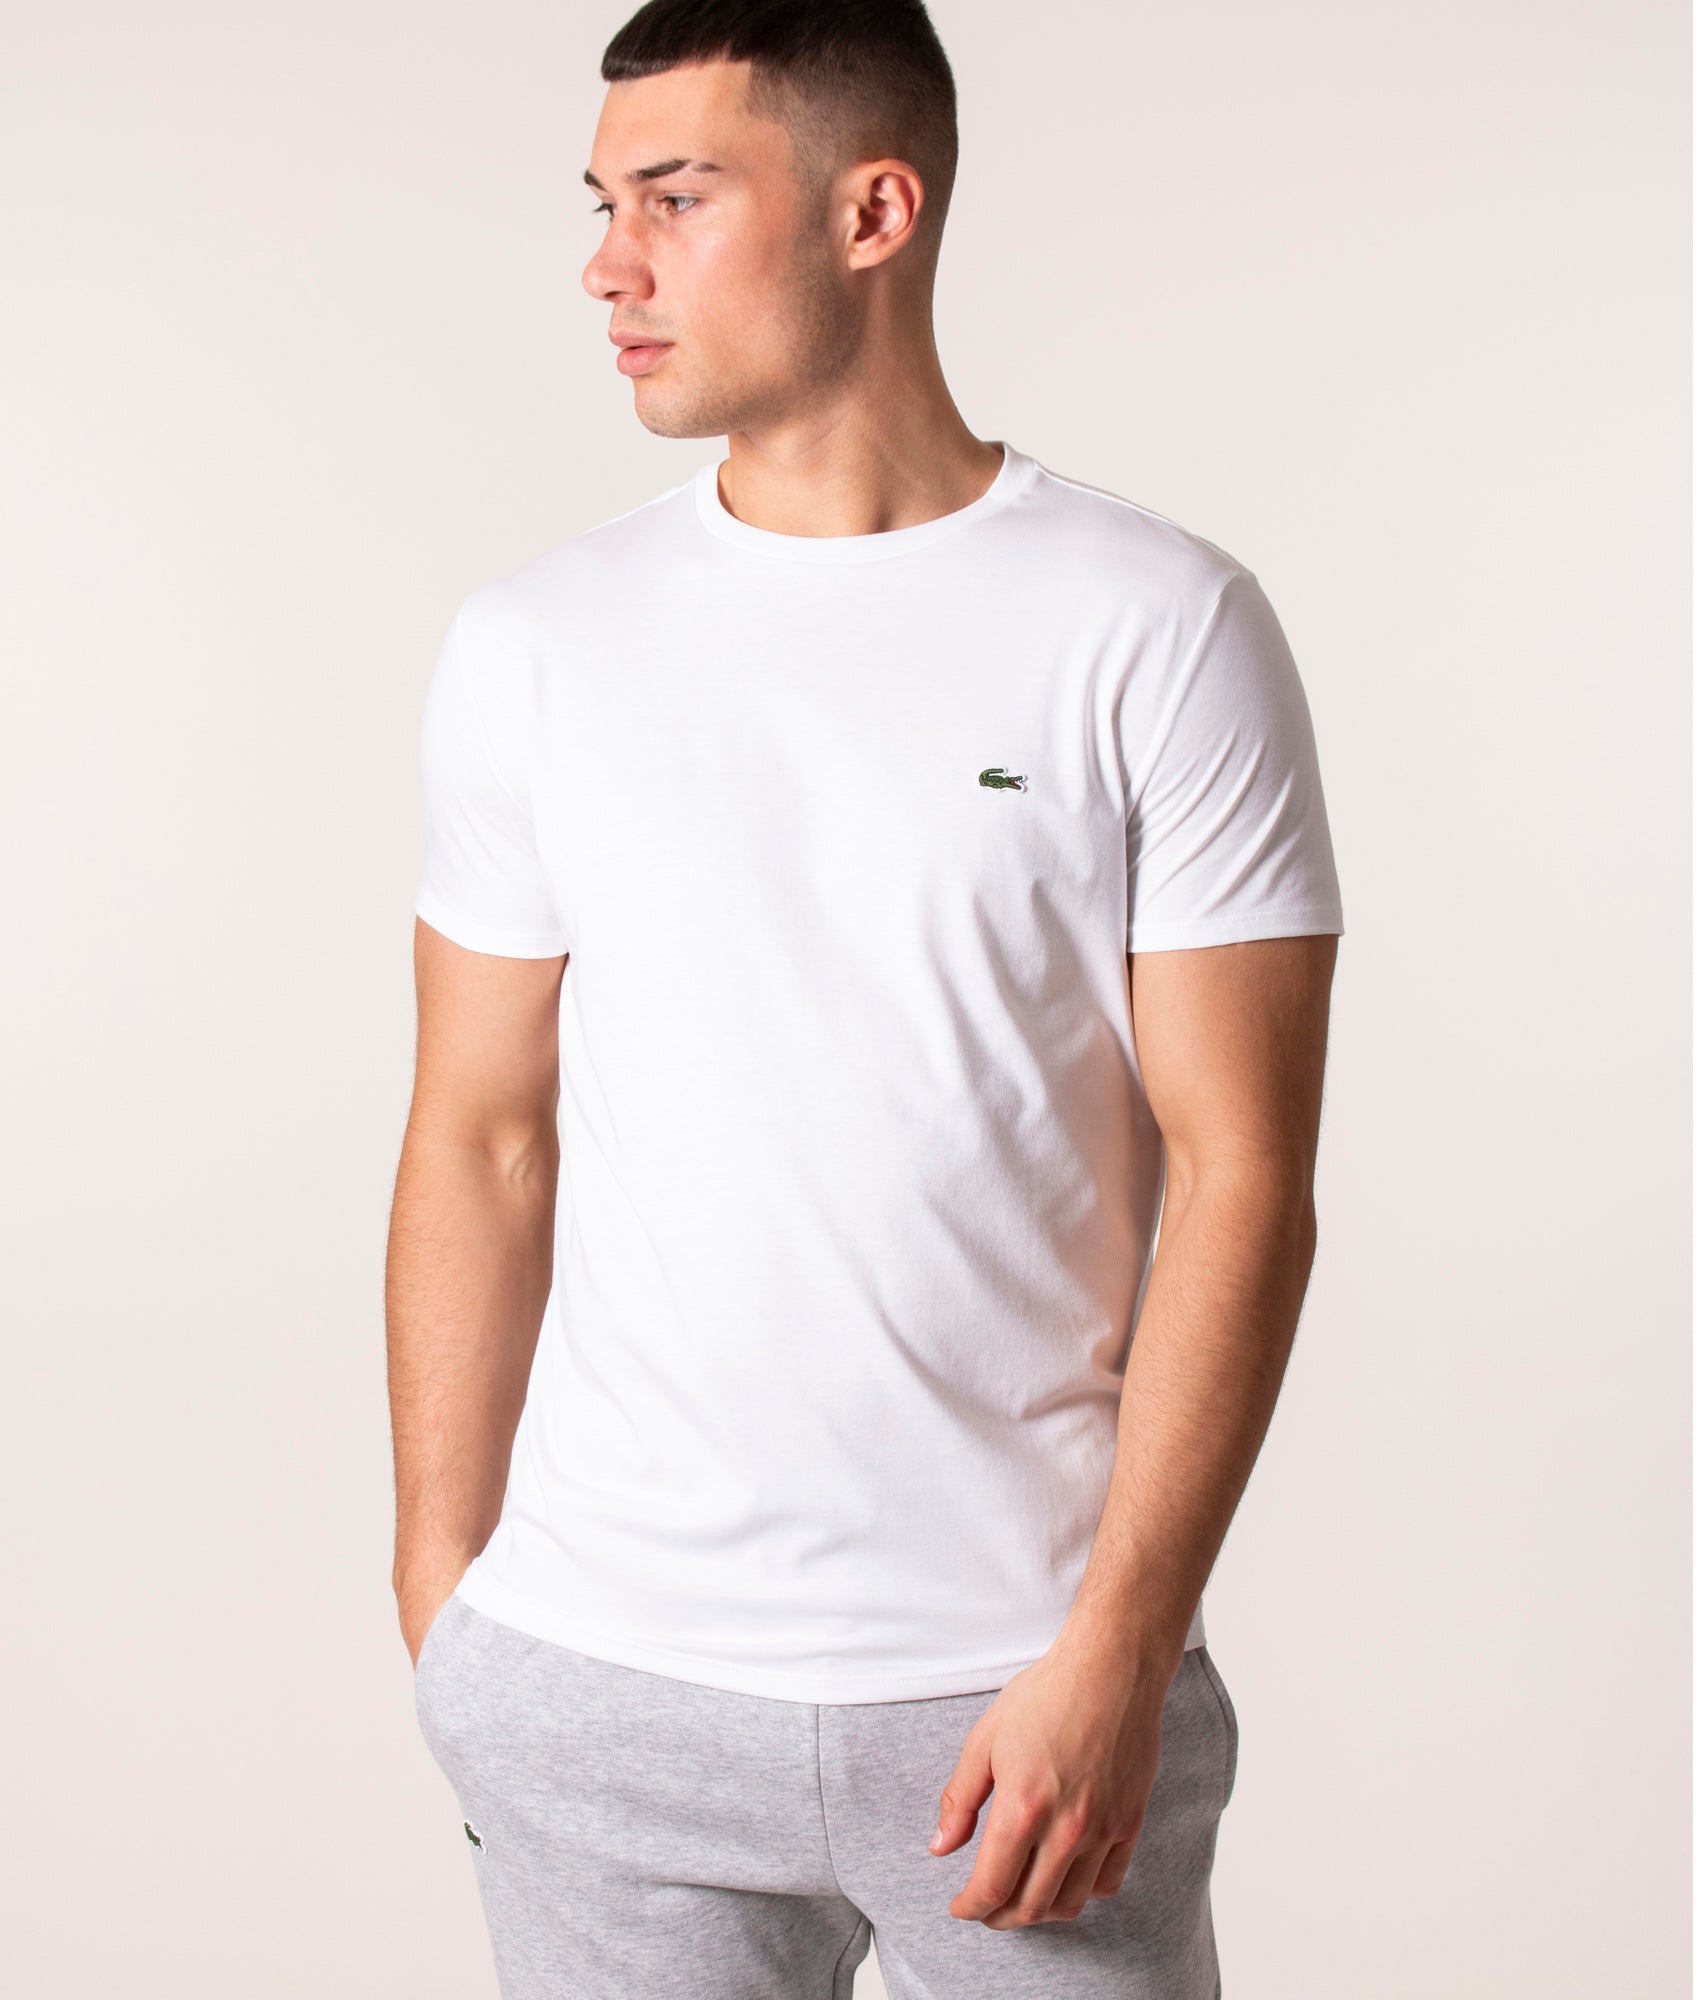 Lacoste Mens Pima Cotton Croc Logo T-Shirt - Colour: 001 White - Size: 7/XXL